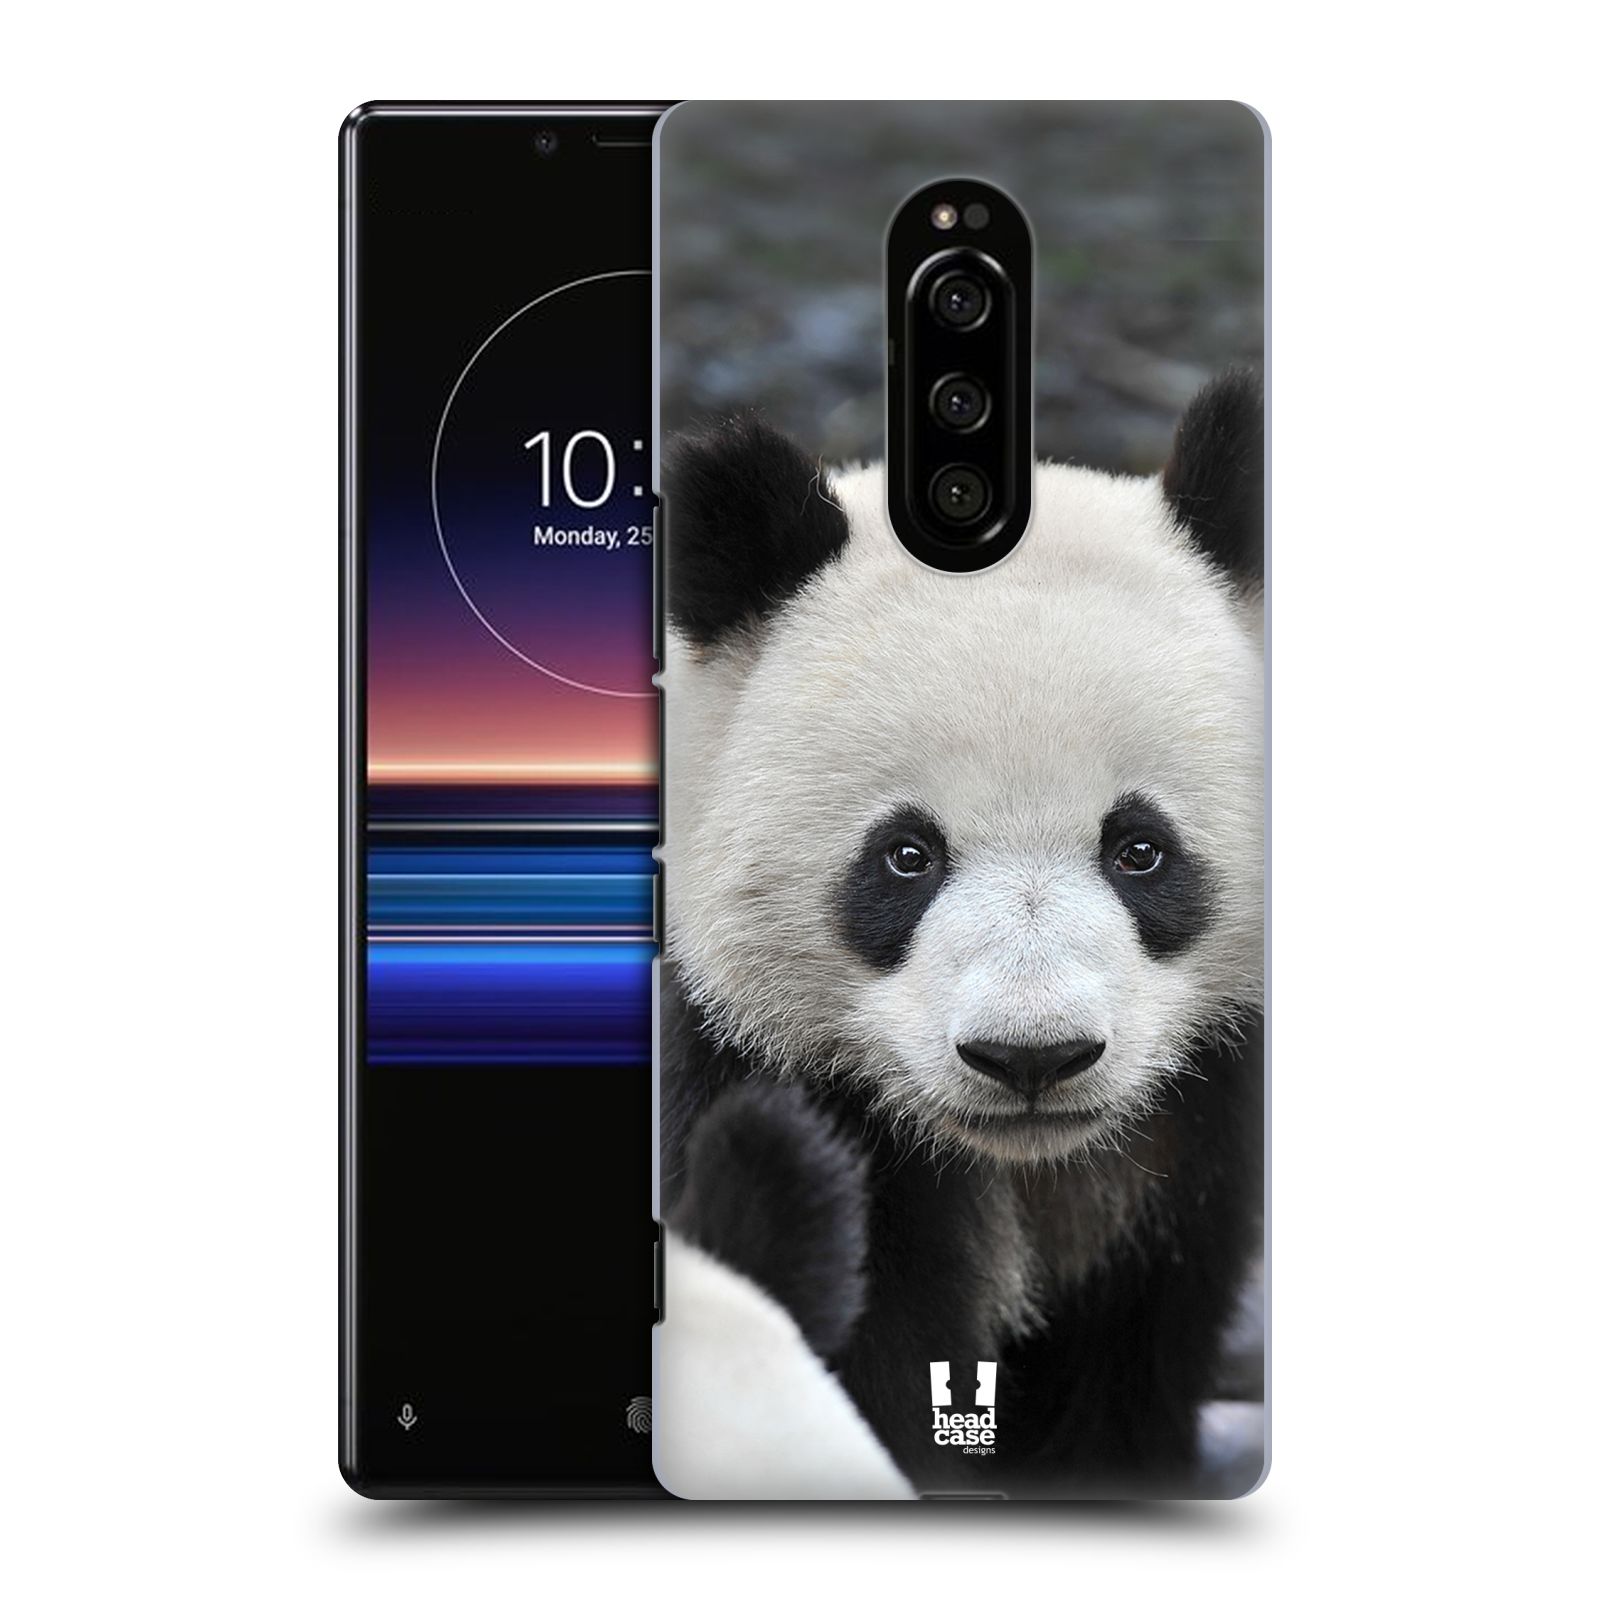 Zadní obal pro mobil Sony Xperia 1 - HEAD CASE - Svět zvířat medvěd panda